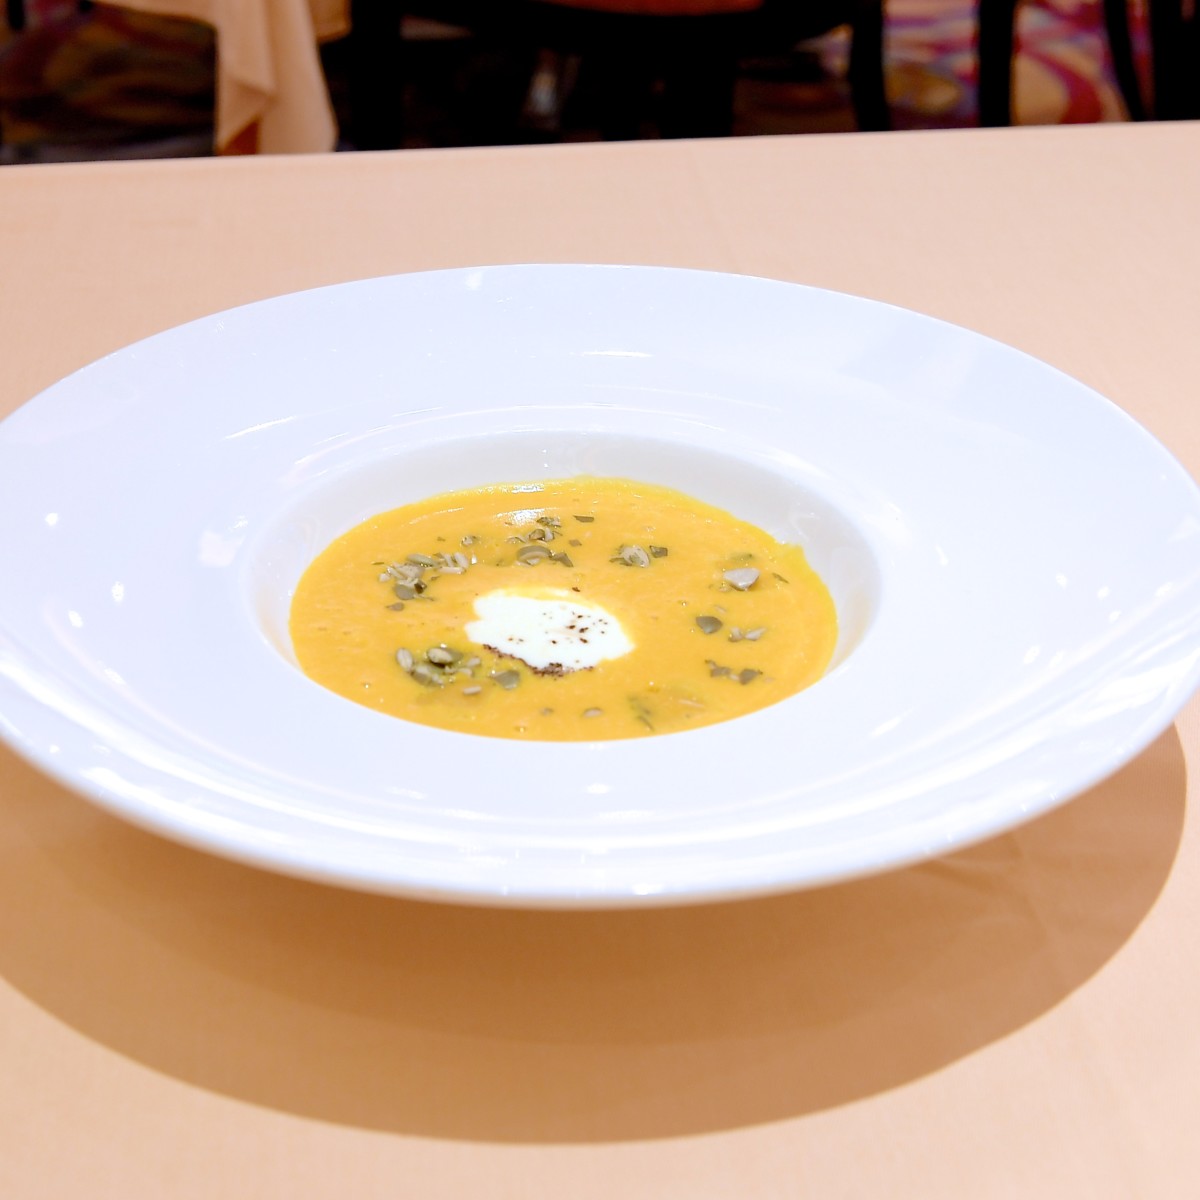 カボチャのスープ セージ風味のニョッキを浮かべて